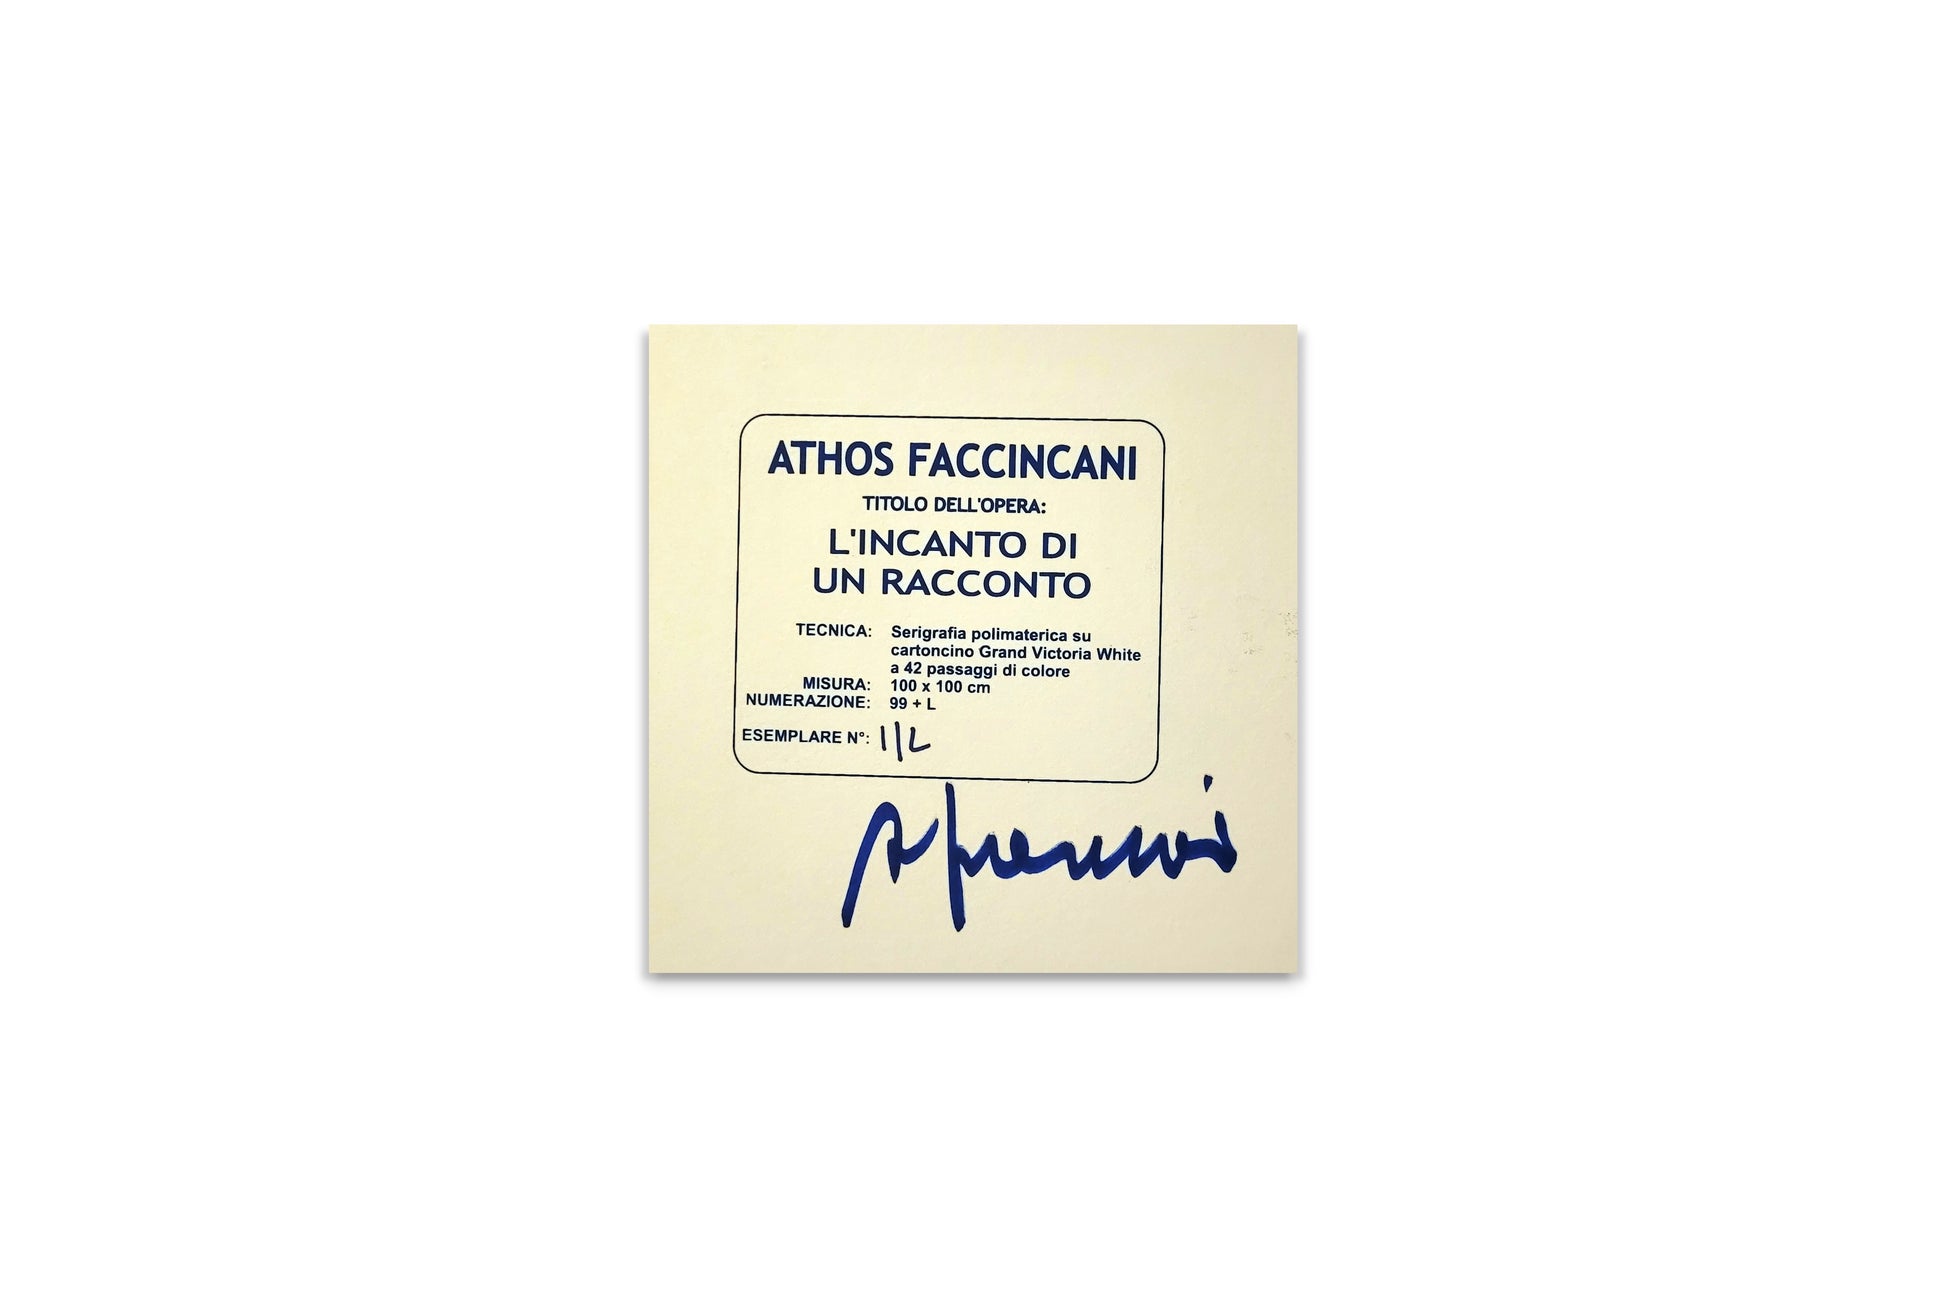 Faccincani Grafics - Serigrafie e Grafiche - Athos Faccincani - Portofino